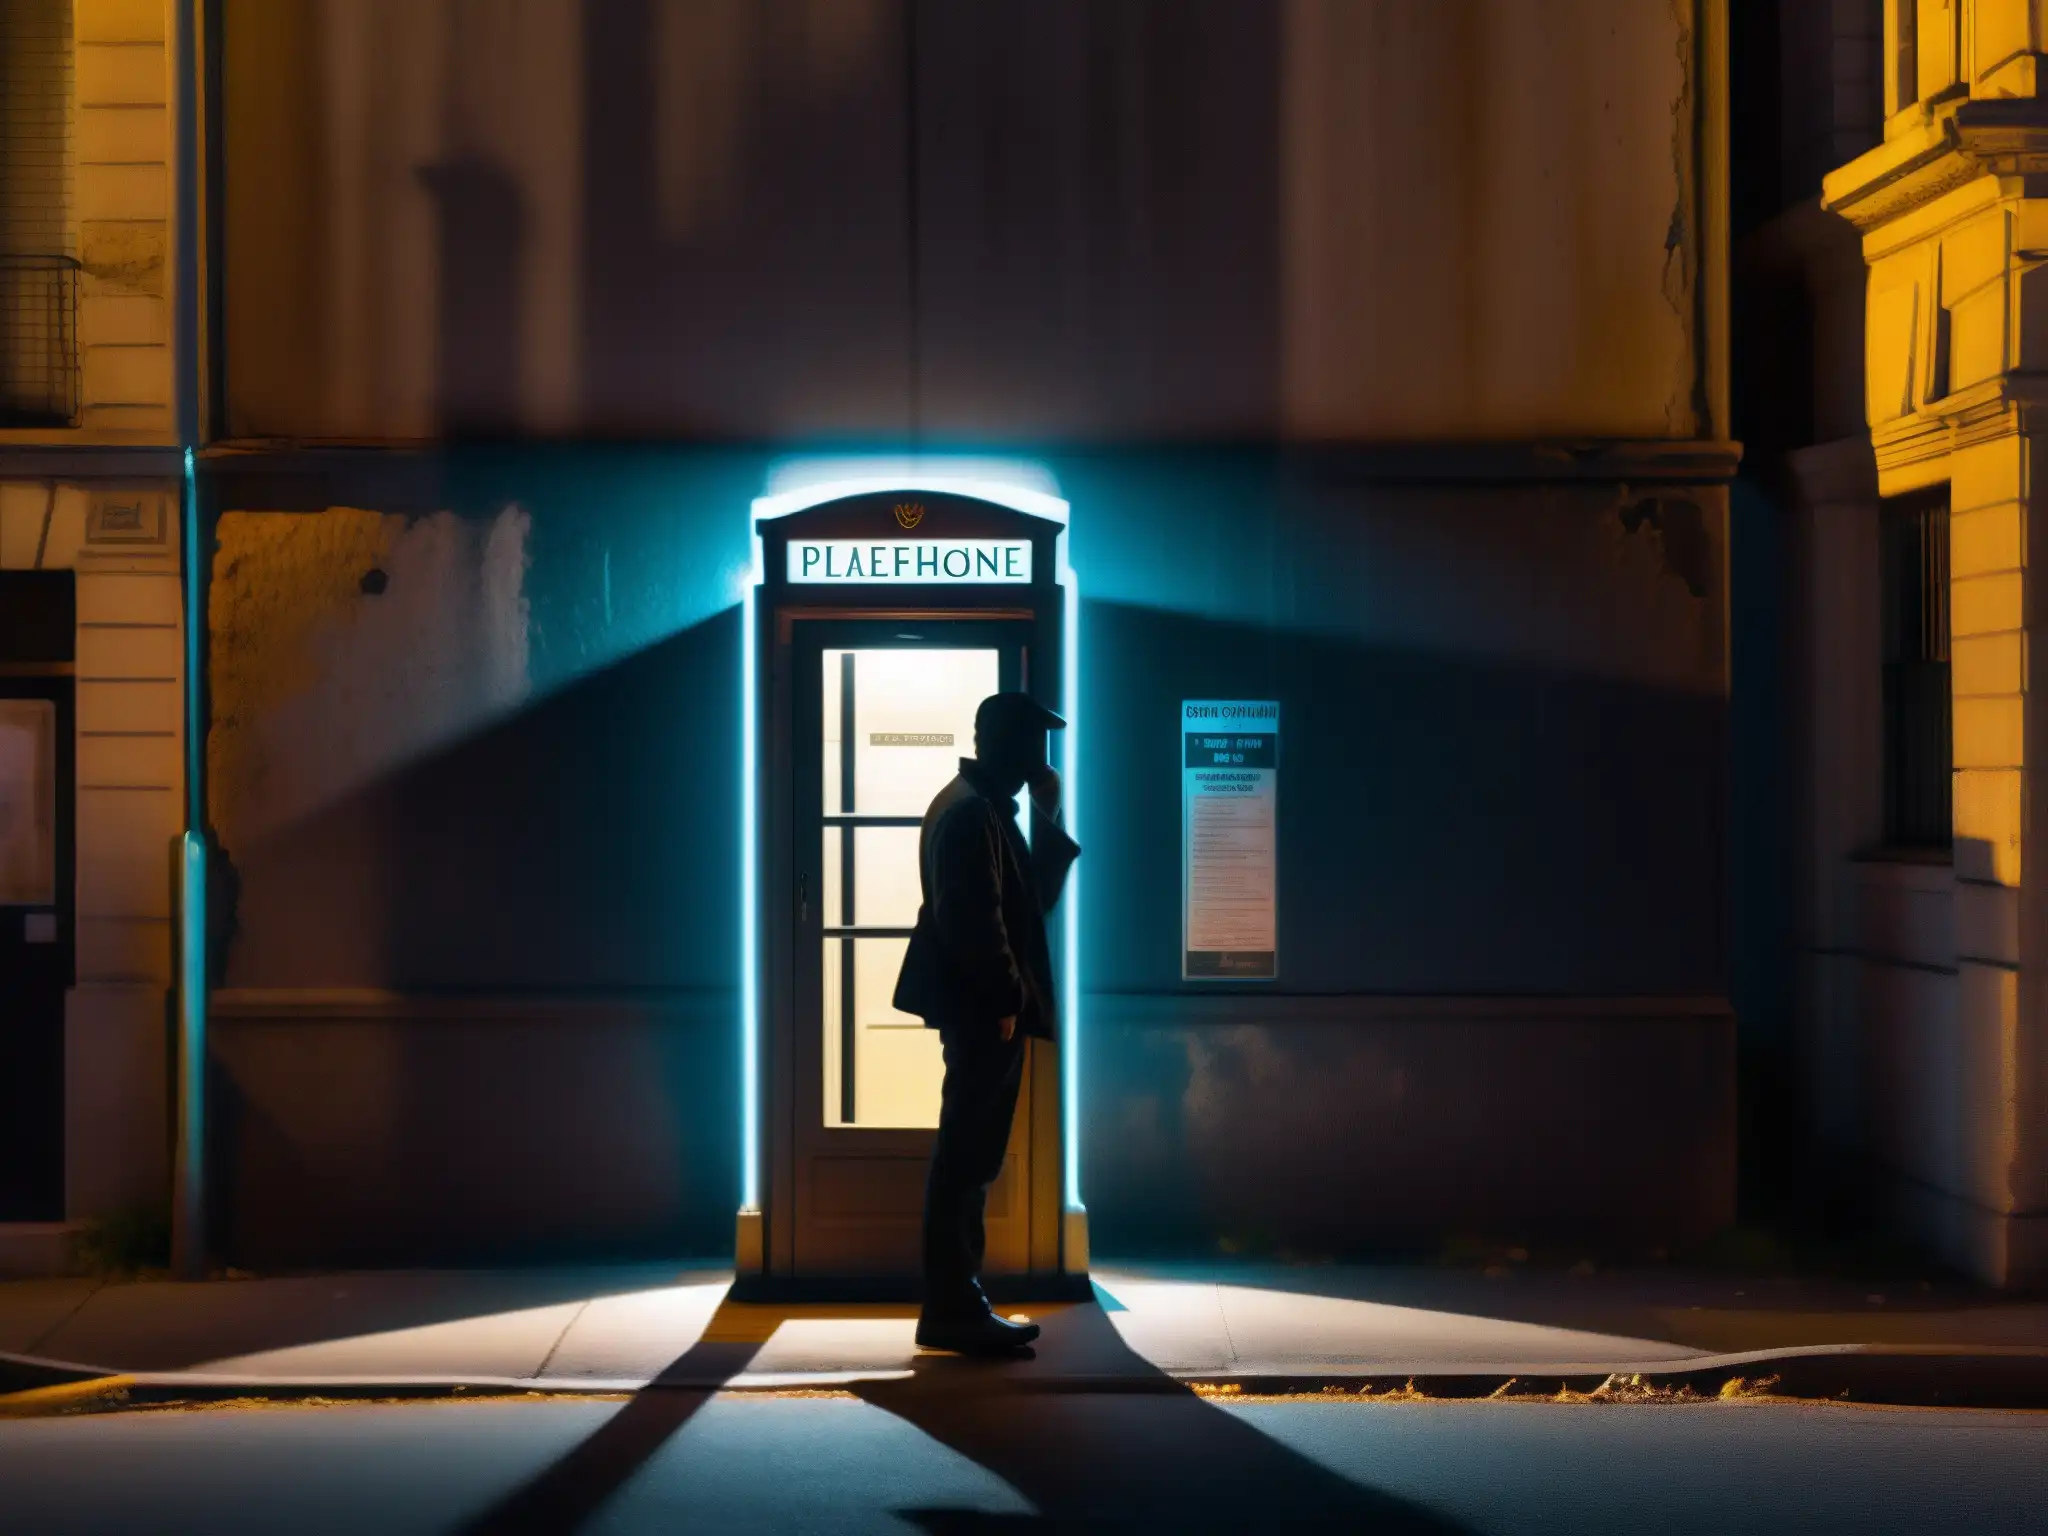 Silueta borrosa en cabina telefónica abandonada, entre sombras y misterio urbano